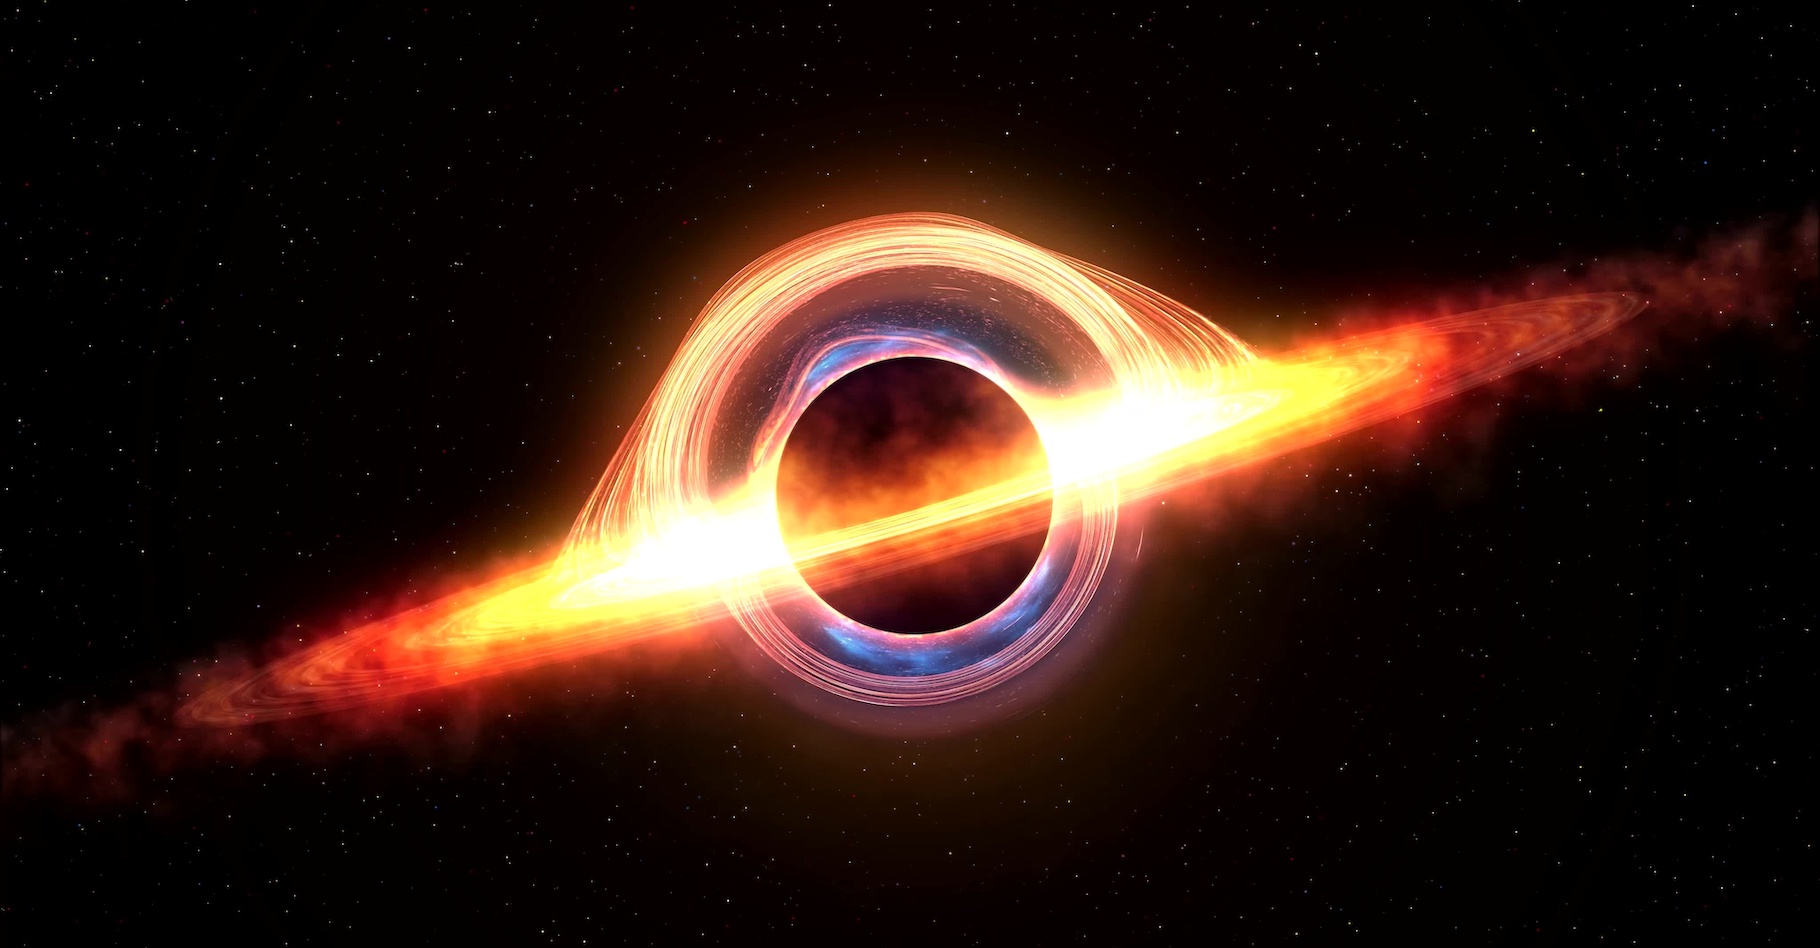 Les trous noirs en rotation sont de potentielles sources d’énergie pour le futur de l’humanité, imaginent des chercheurs de l’université de Columbia (États-Unis). © inlimit3D, Adobe Stock